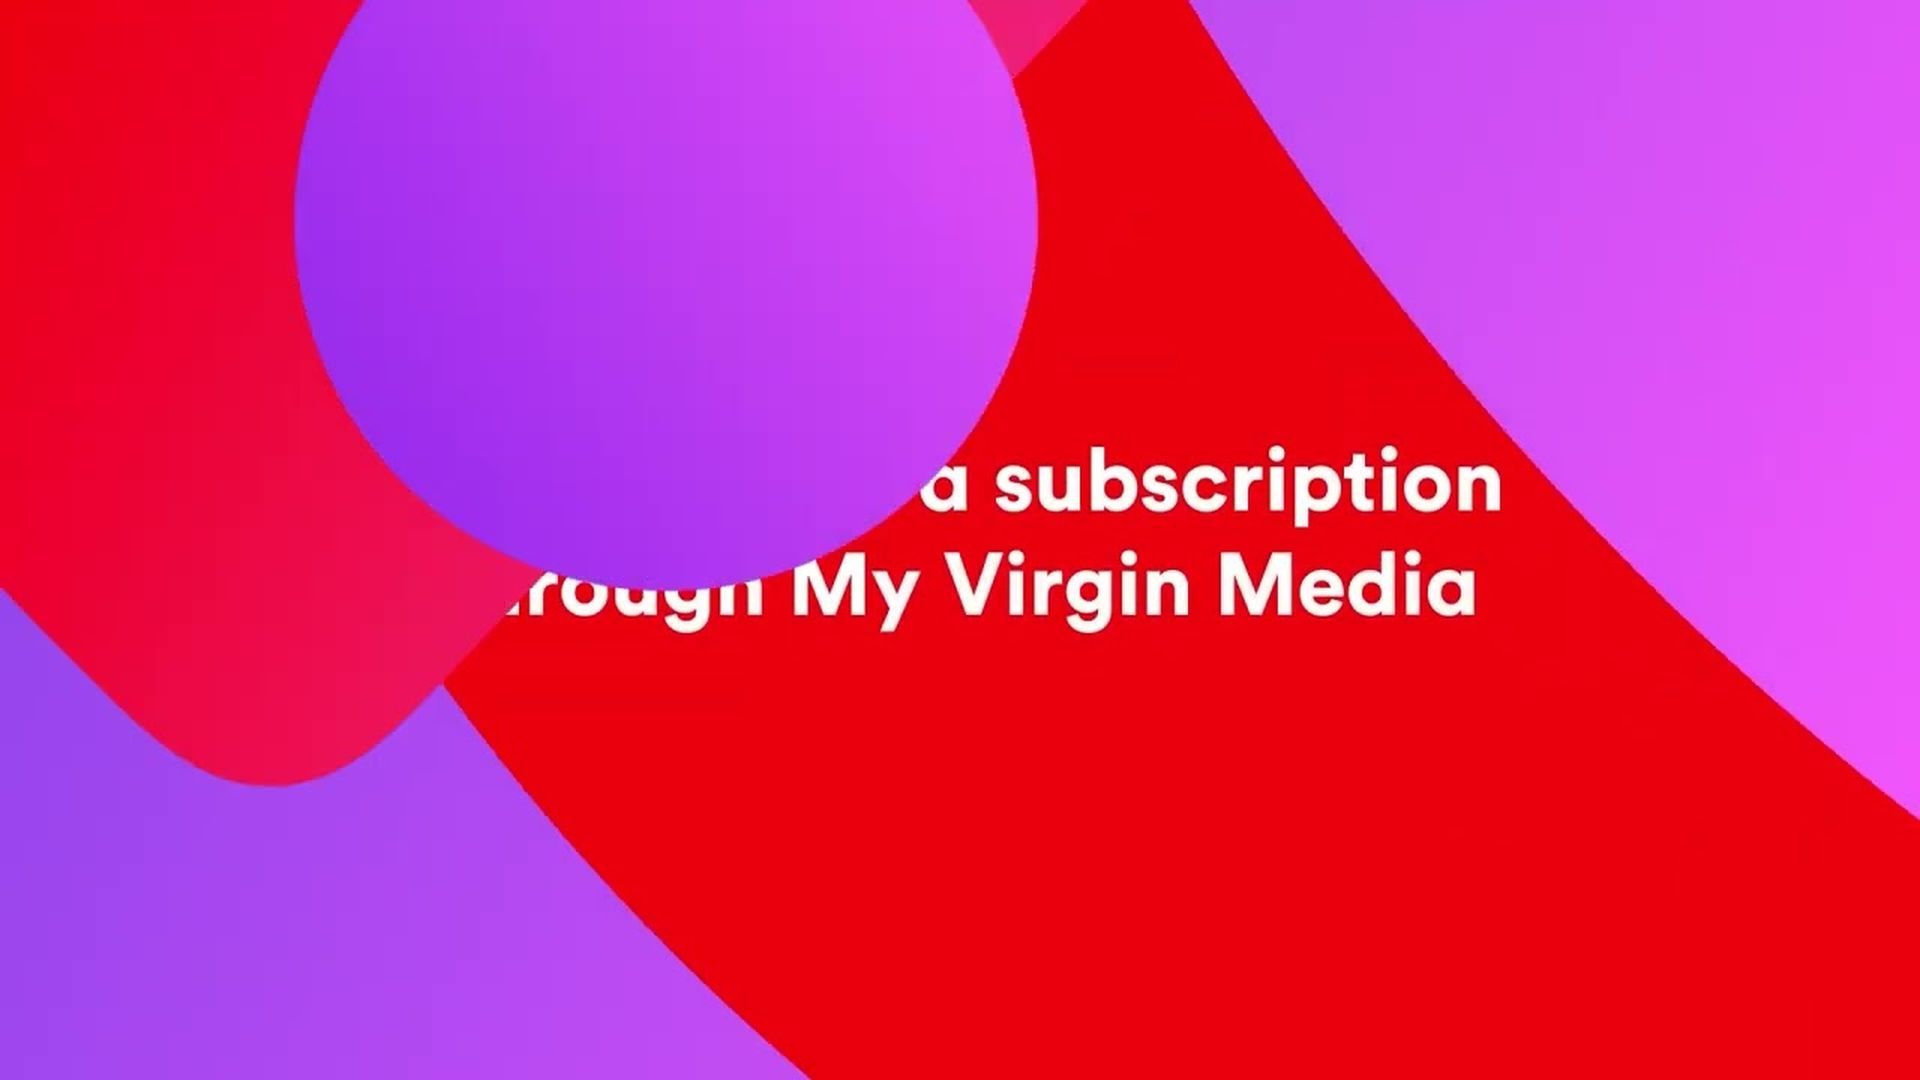 Электронная почта Virgin Media не работает 